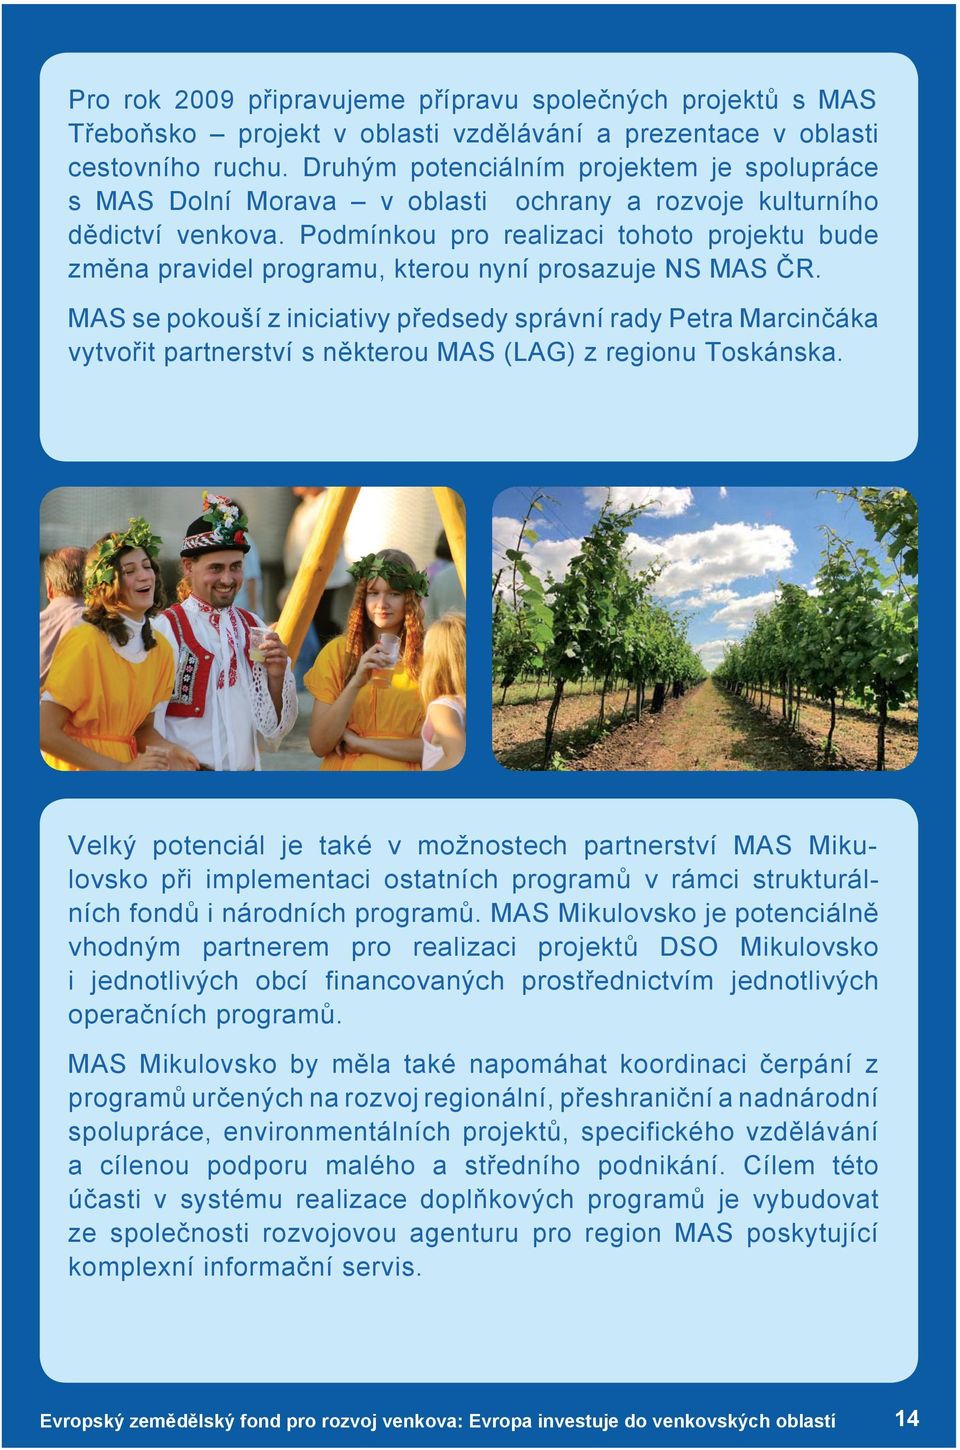 Podmínkou pro realizaci tohoto projektu bude změna pravidel programu, kterou nyní prosazuje NS MAS ČR.